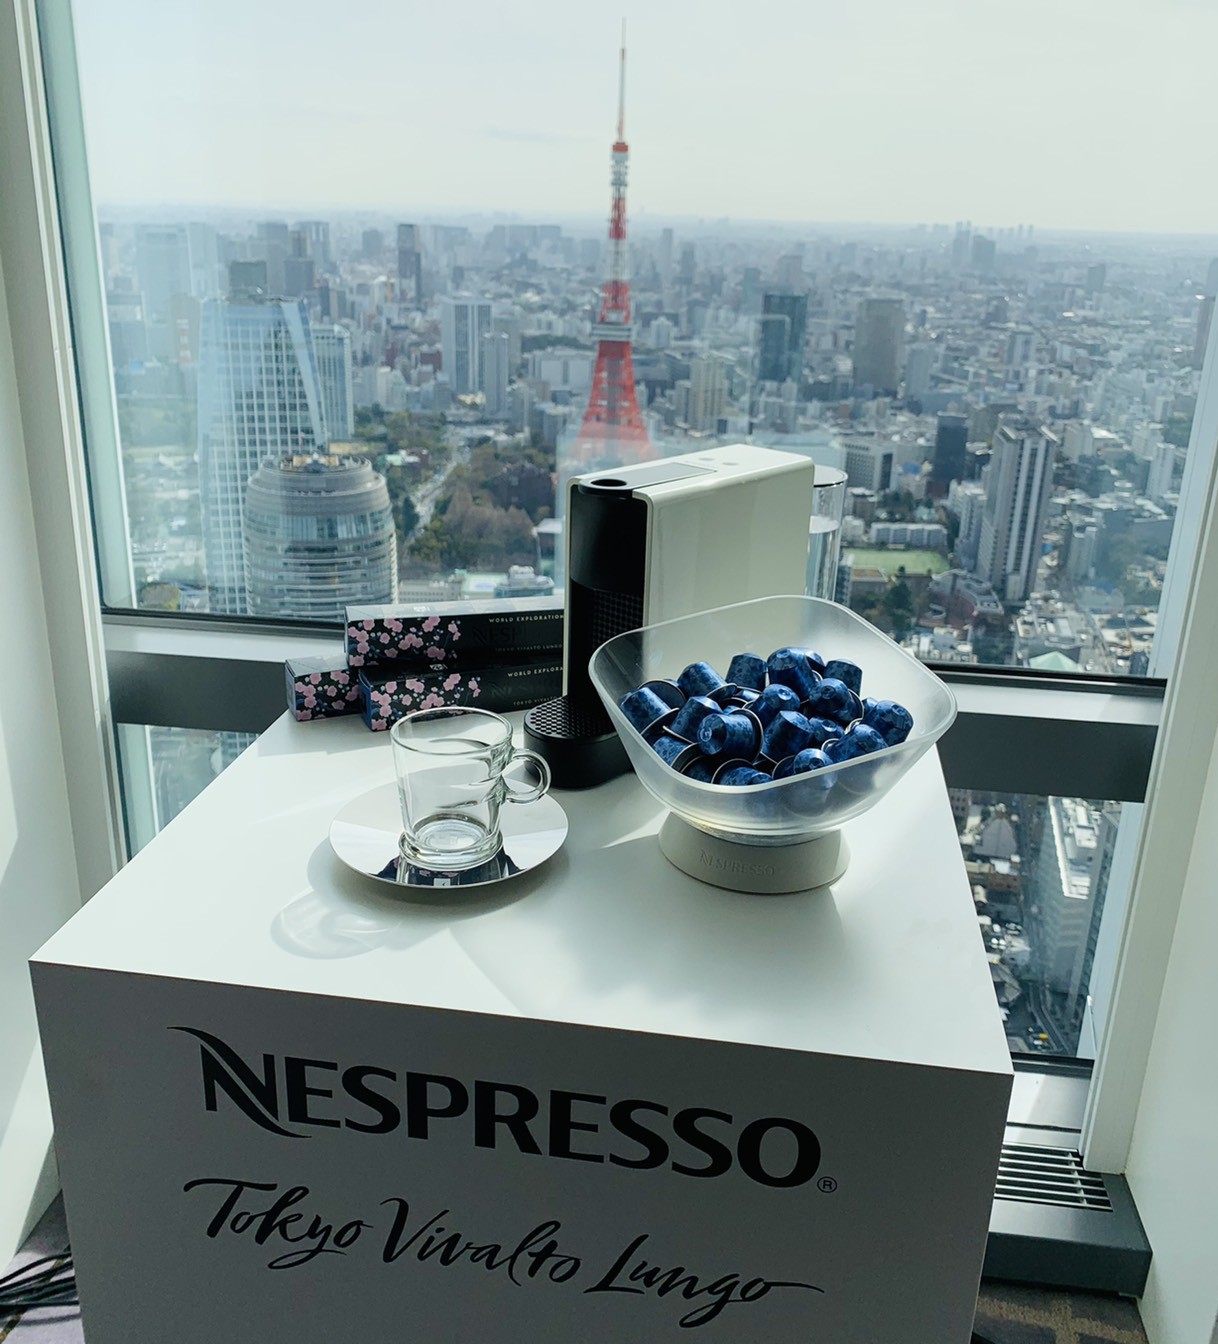 日本人好みのコーヒー「トウキョウ・ヴィヴァルト・ルンゴ」に夢中です 